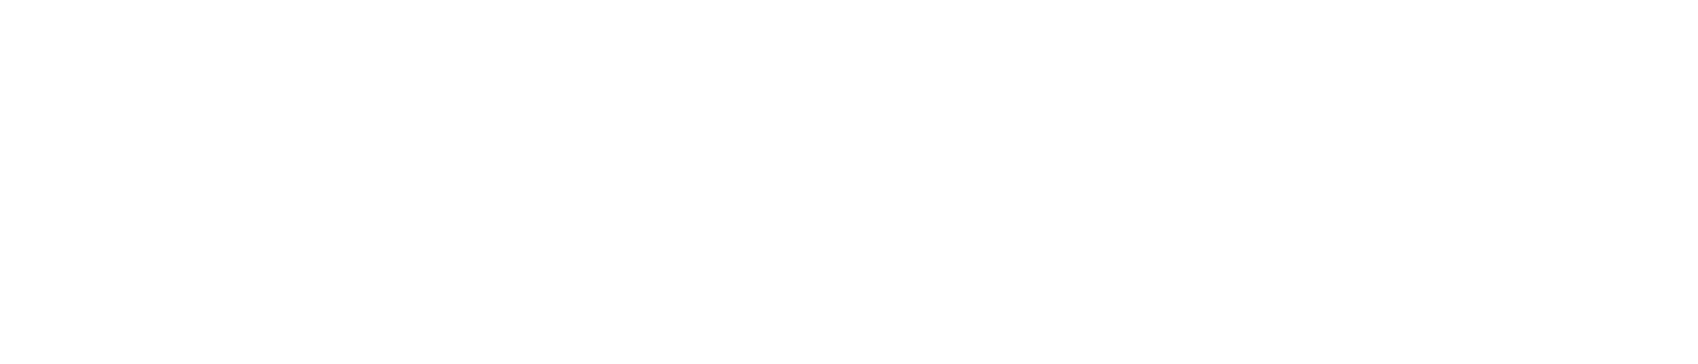 Logo_synetis_blanc